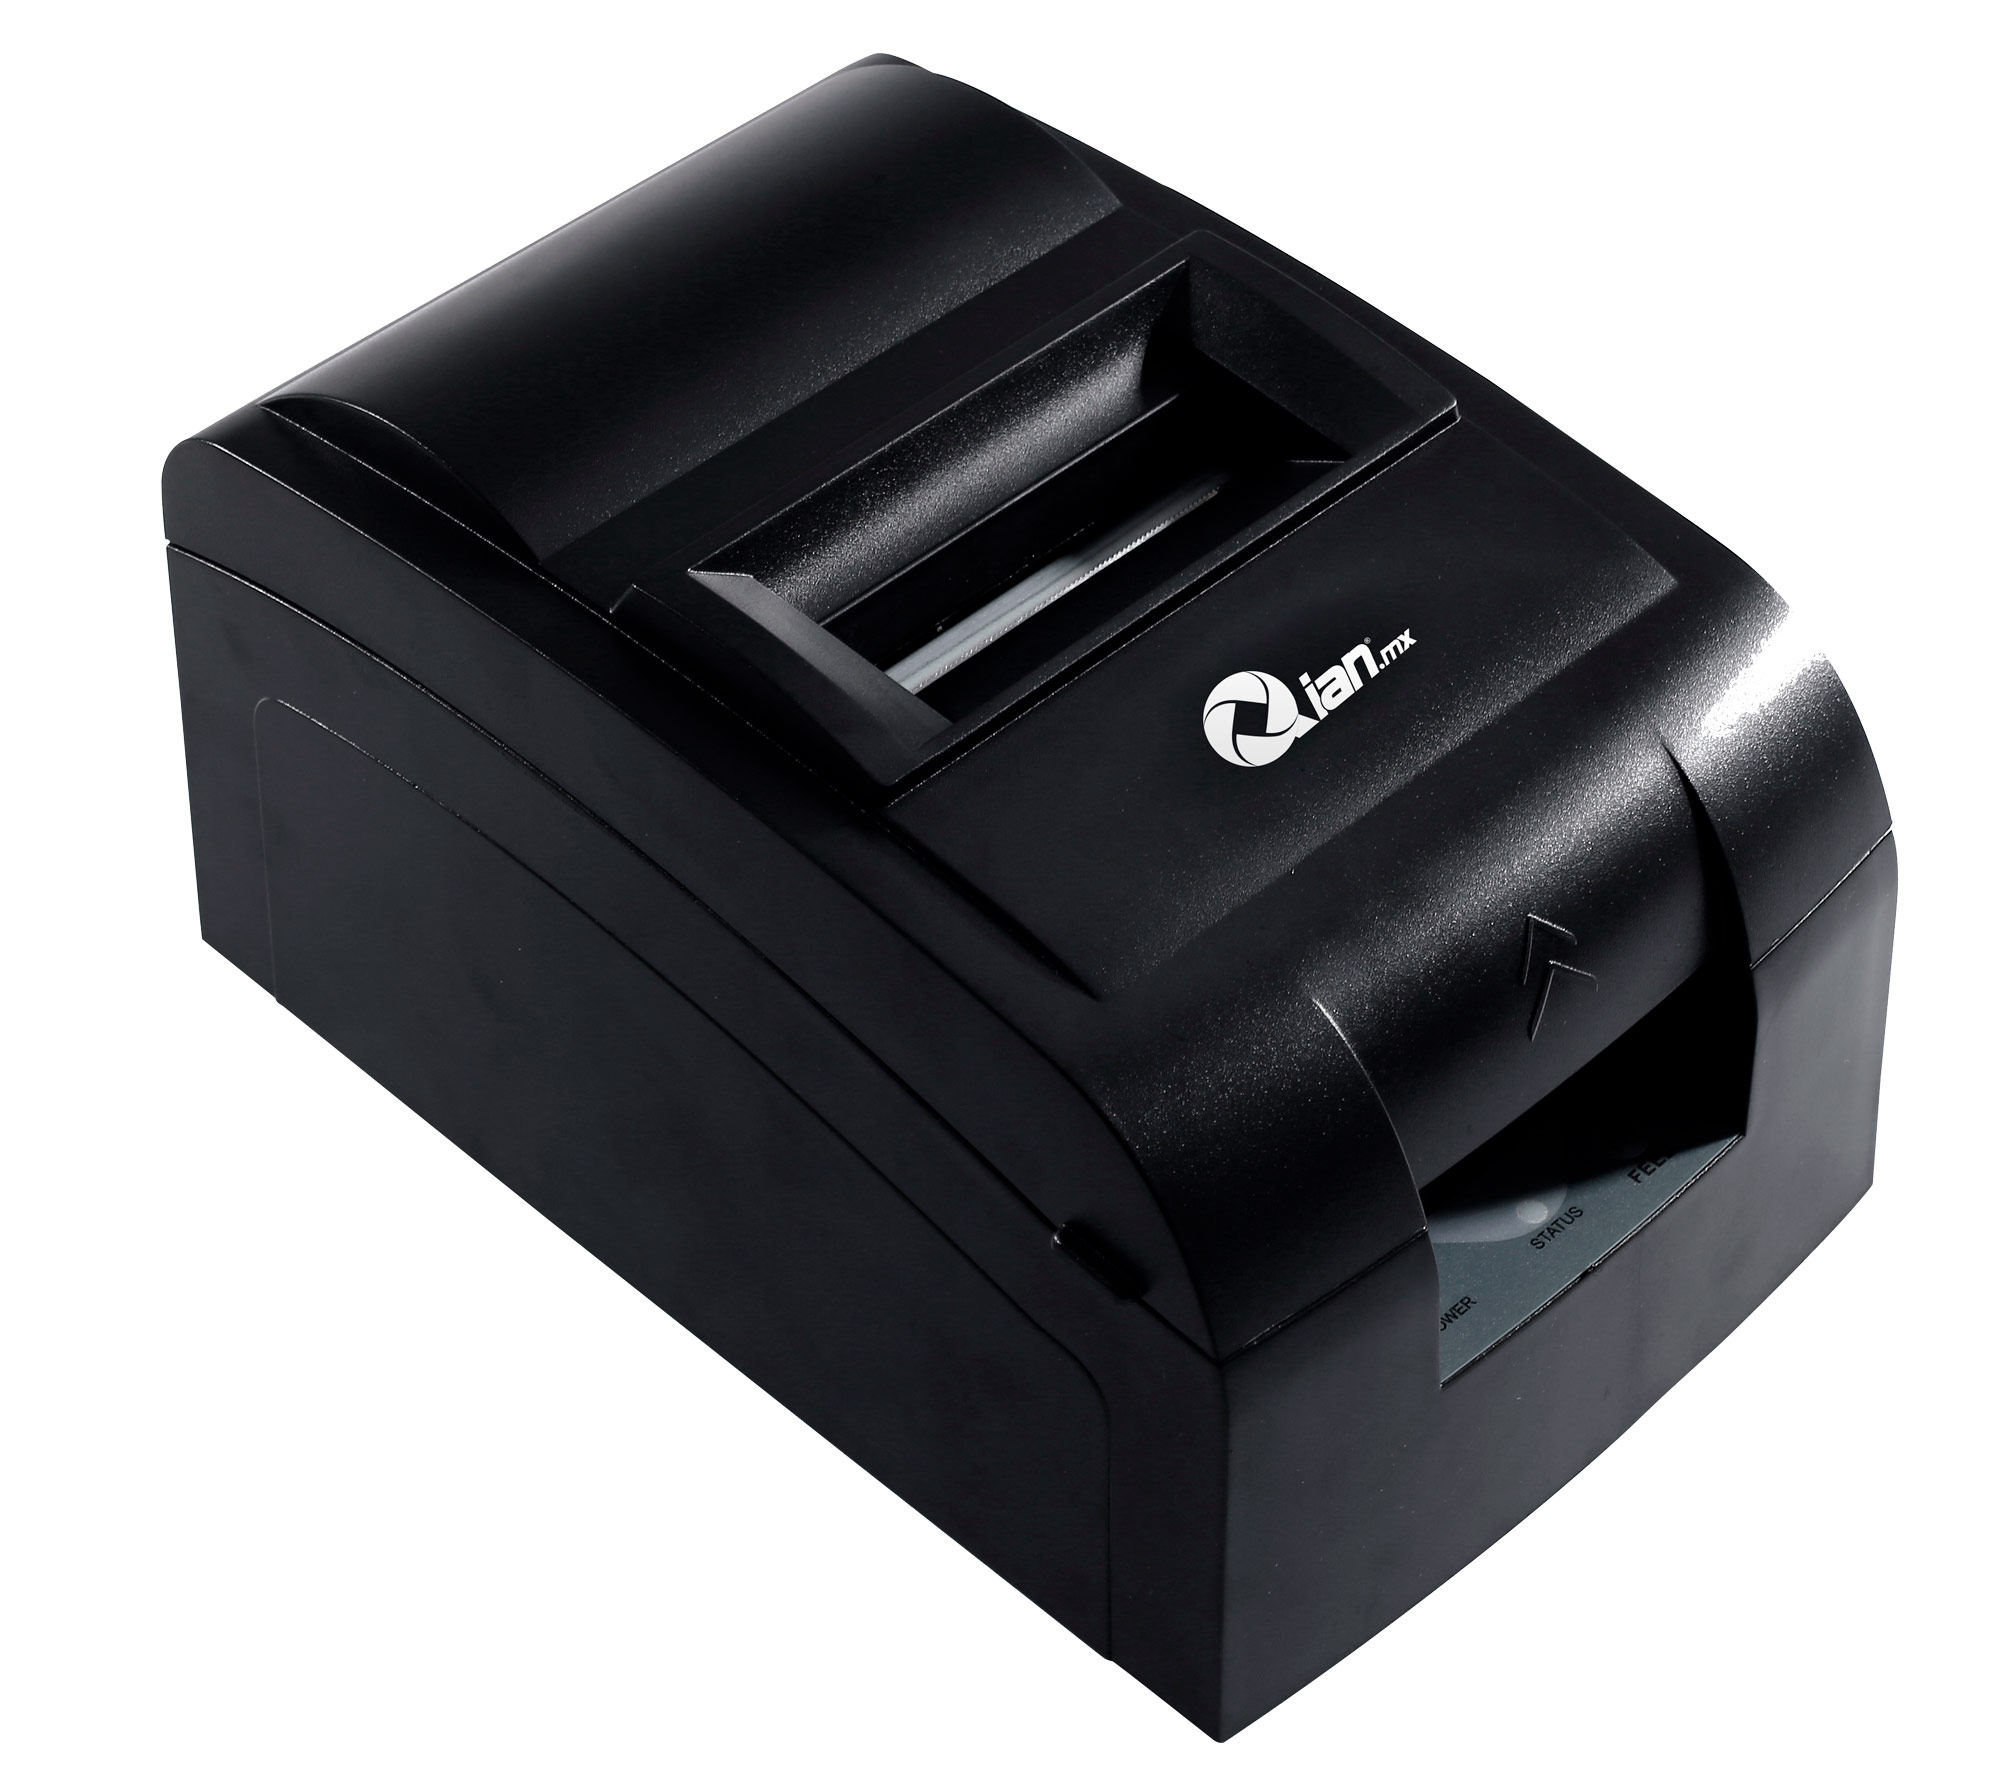 MINIPRINTER QIAN QIMP761701 ANJET 76 MATRIZ D PUNTO USB CORT/MAN 76MM - QIMP761701